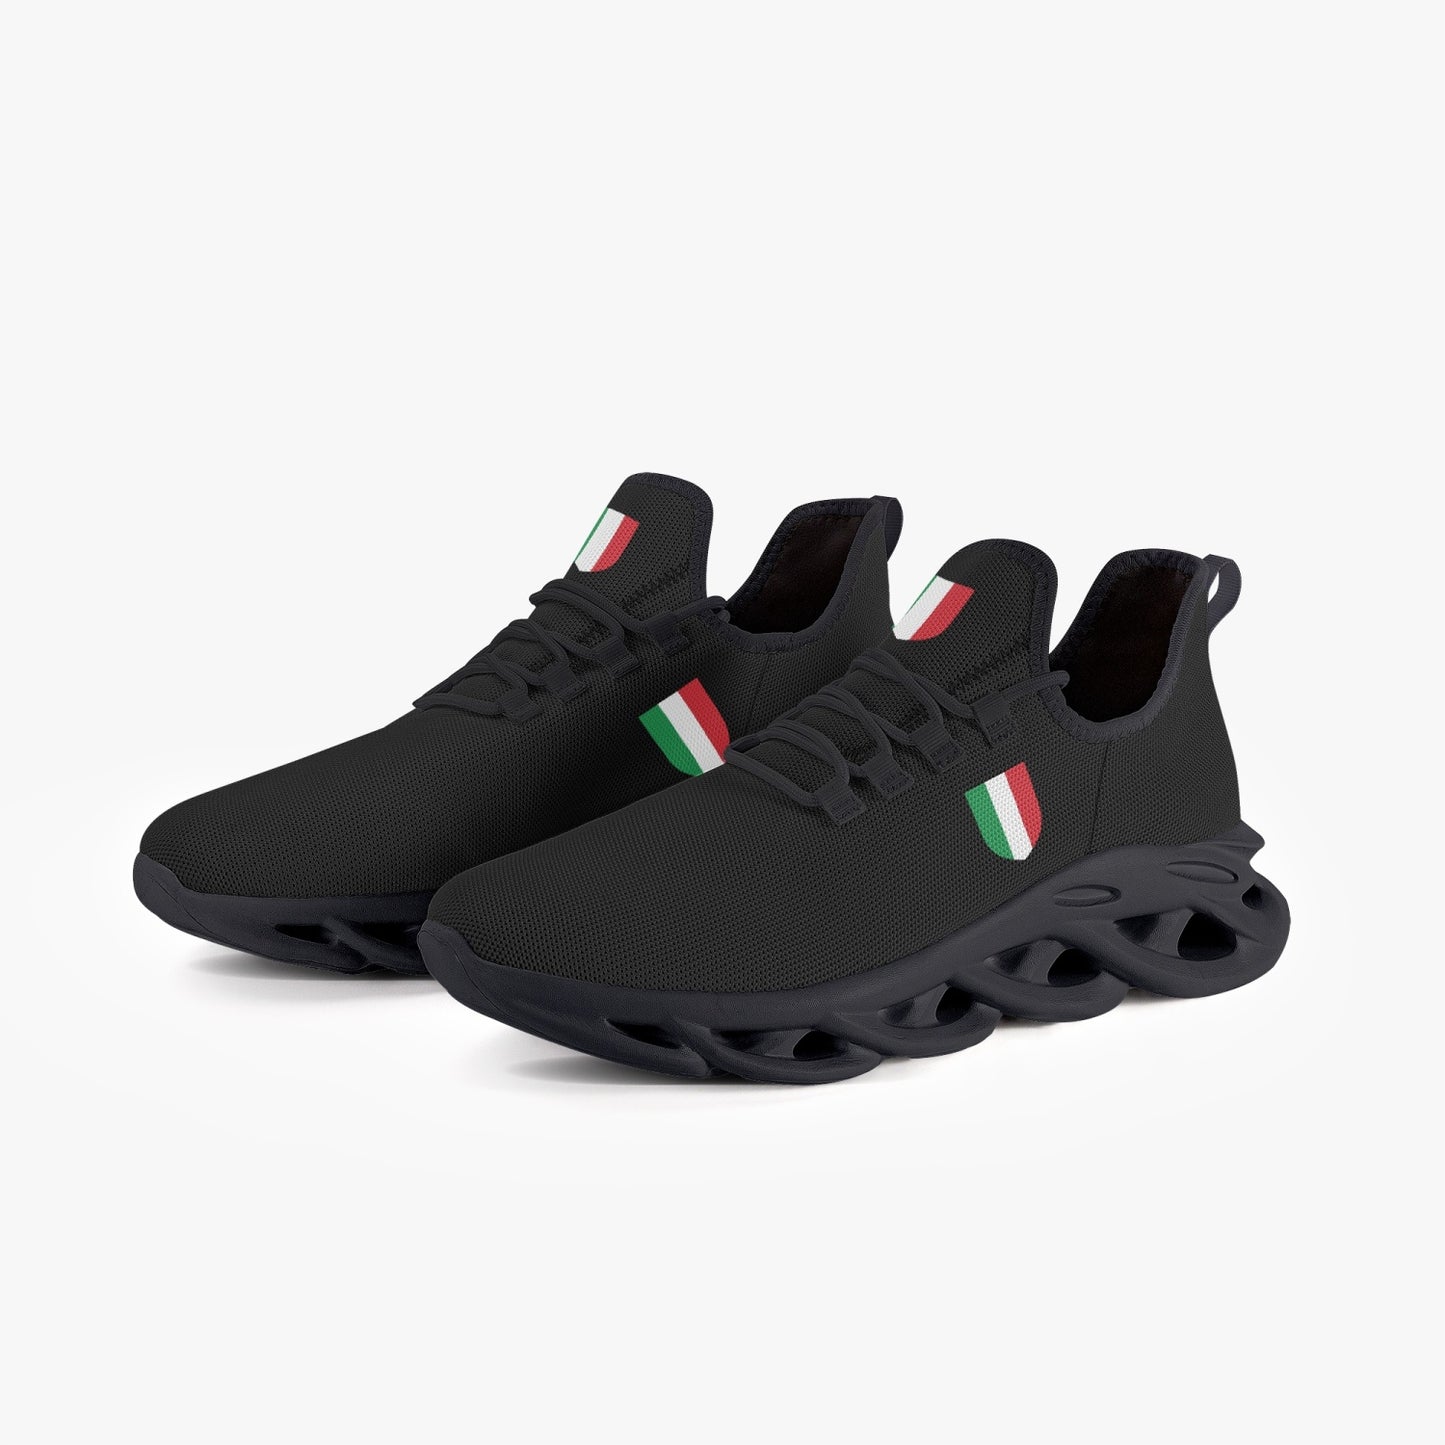 Sneakers - Italia Black - donna